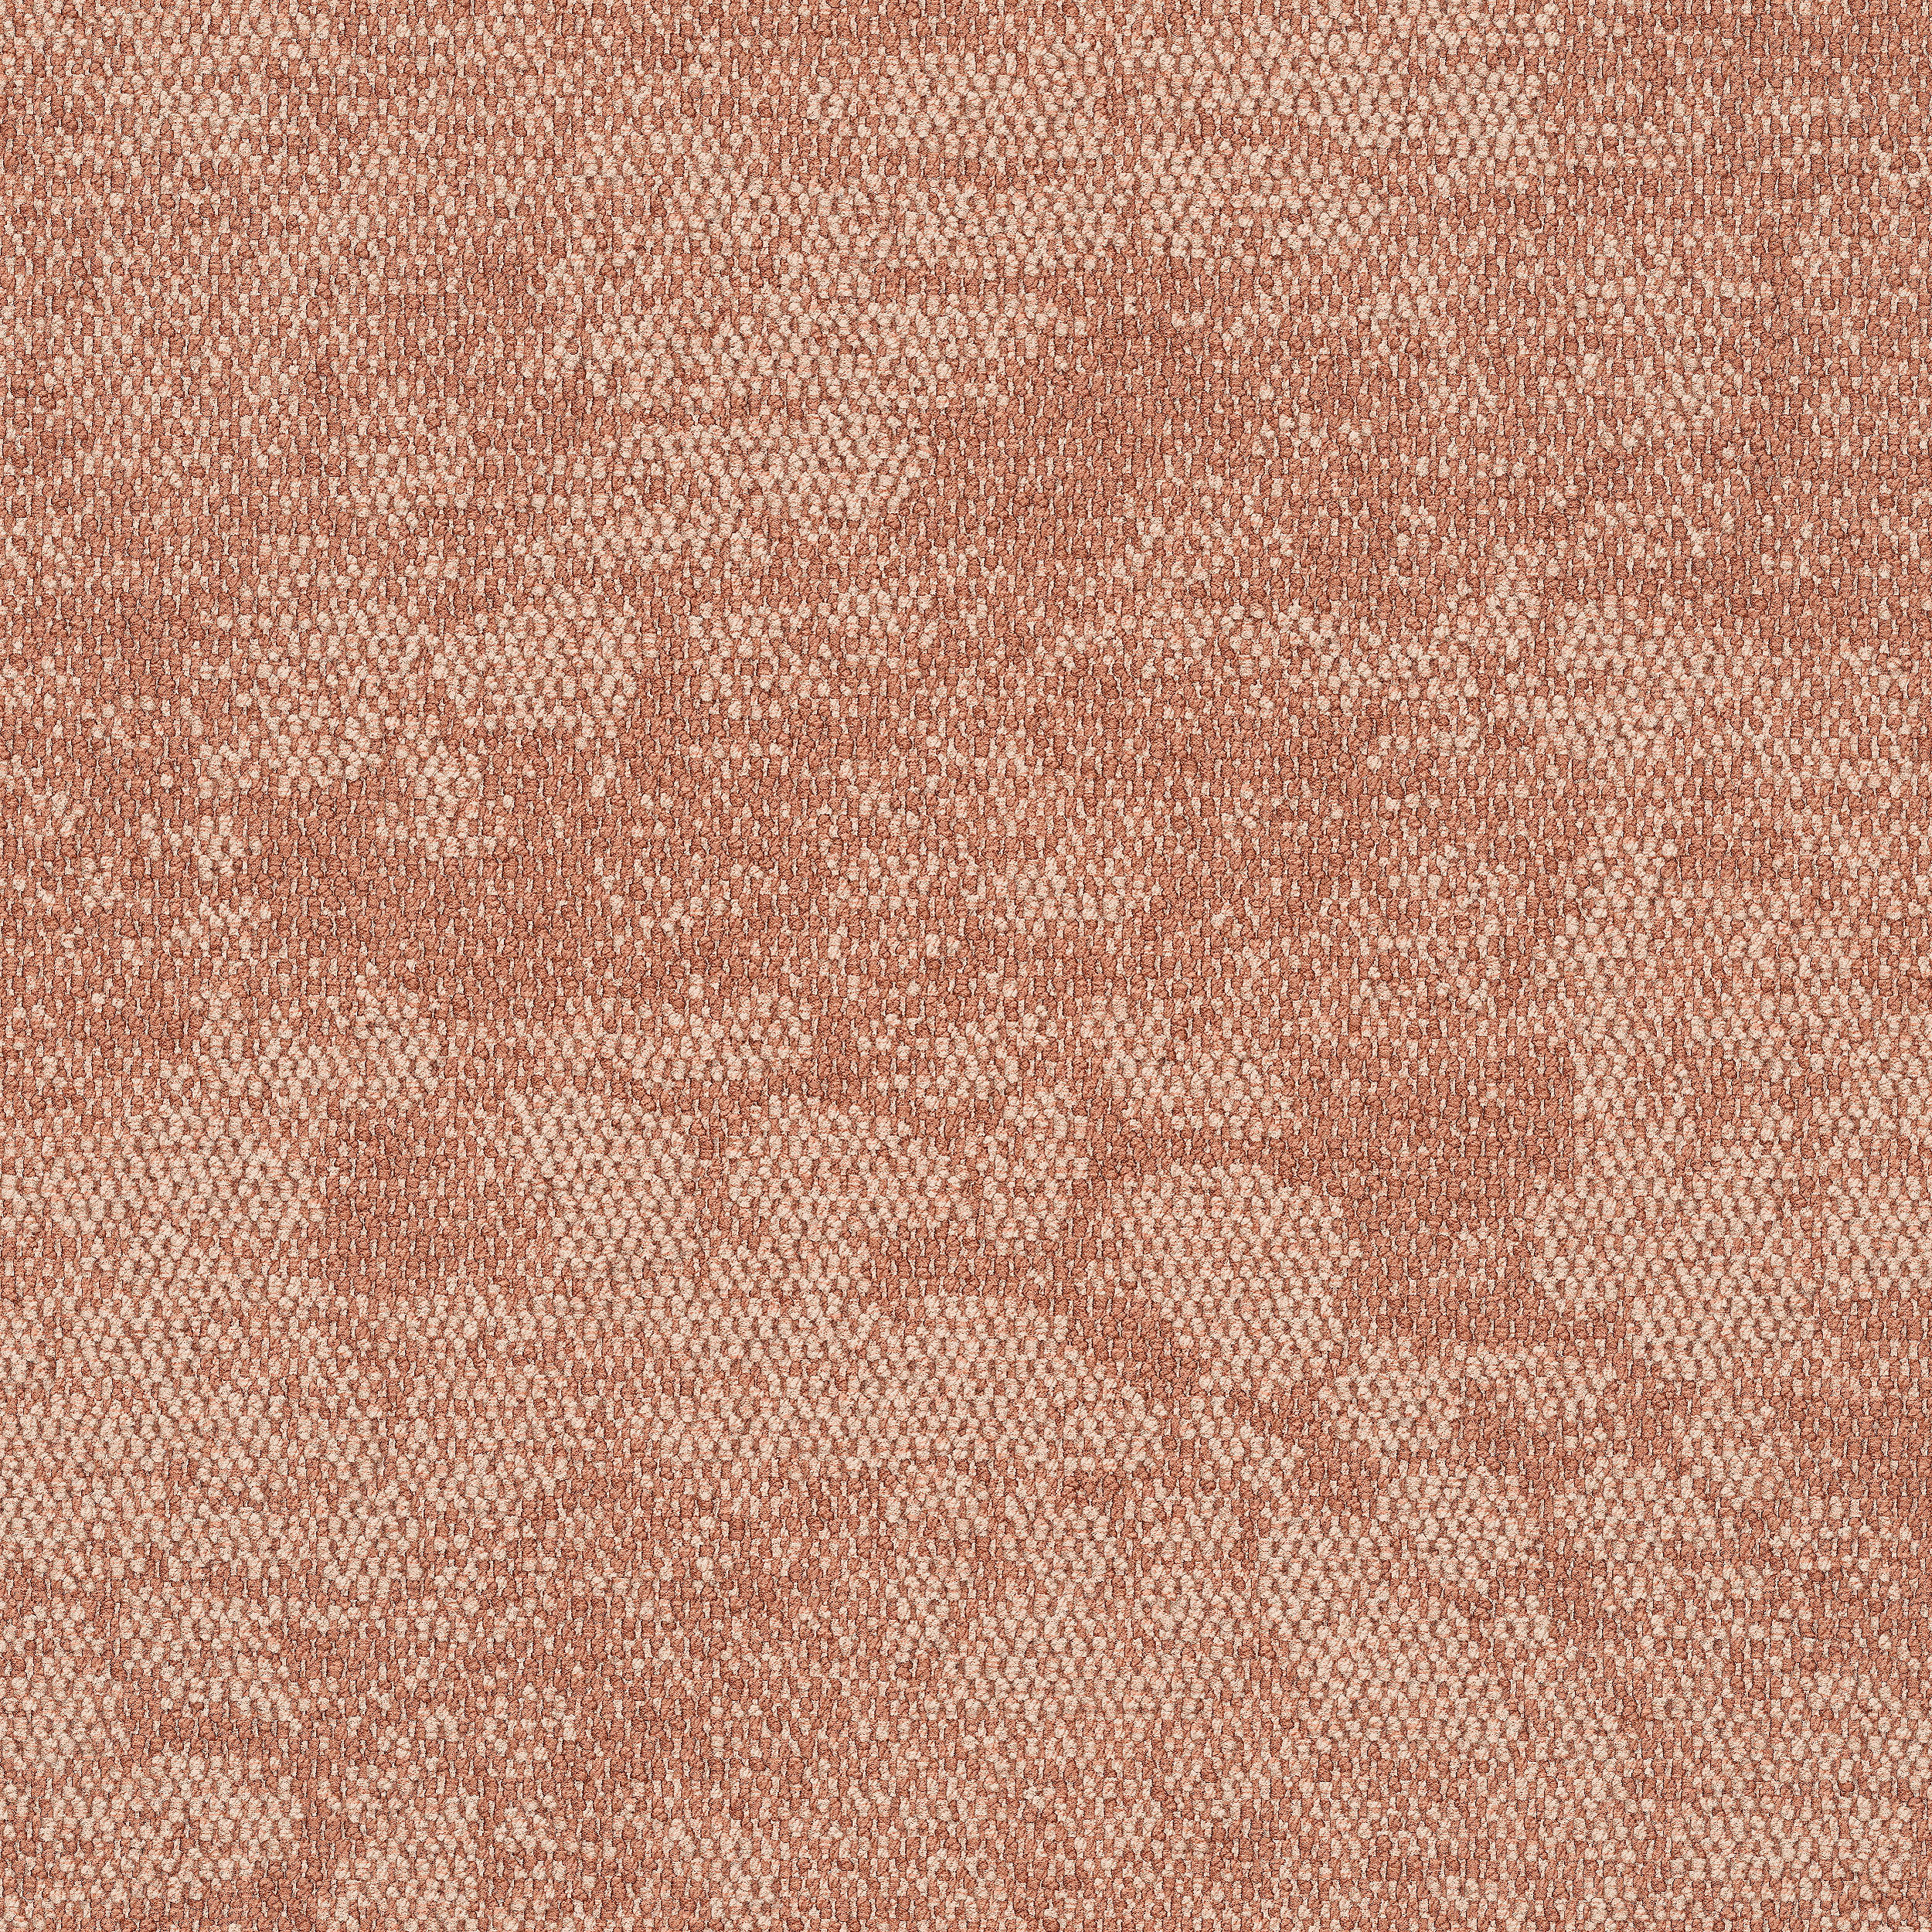 Escarpment carpet tile in Desert Sands número de imagen 11